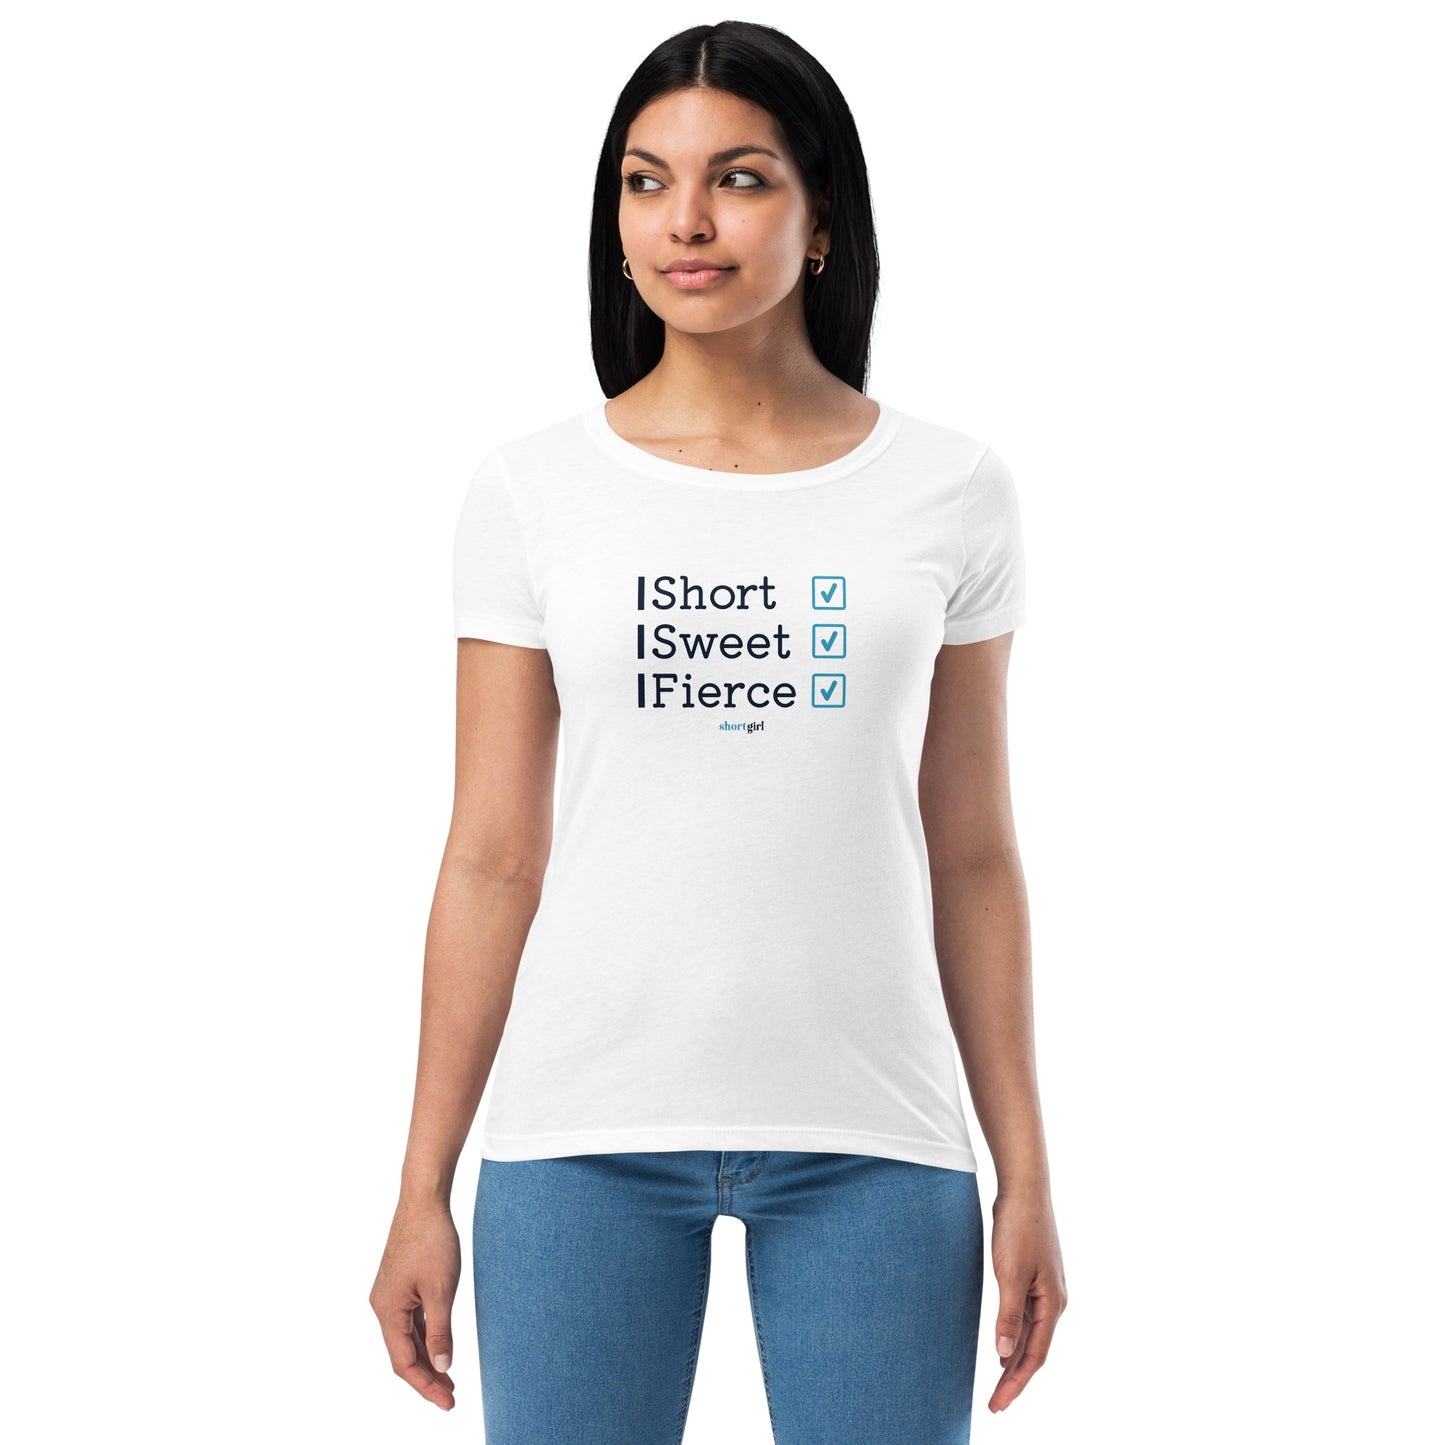 Women’s fitted t-shirt - Short, Sweet, Fierce